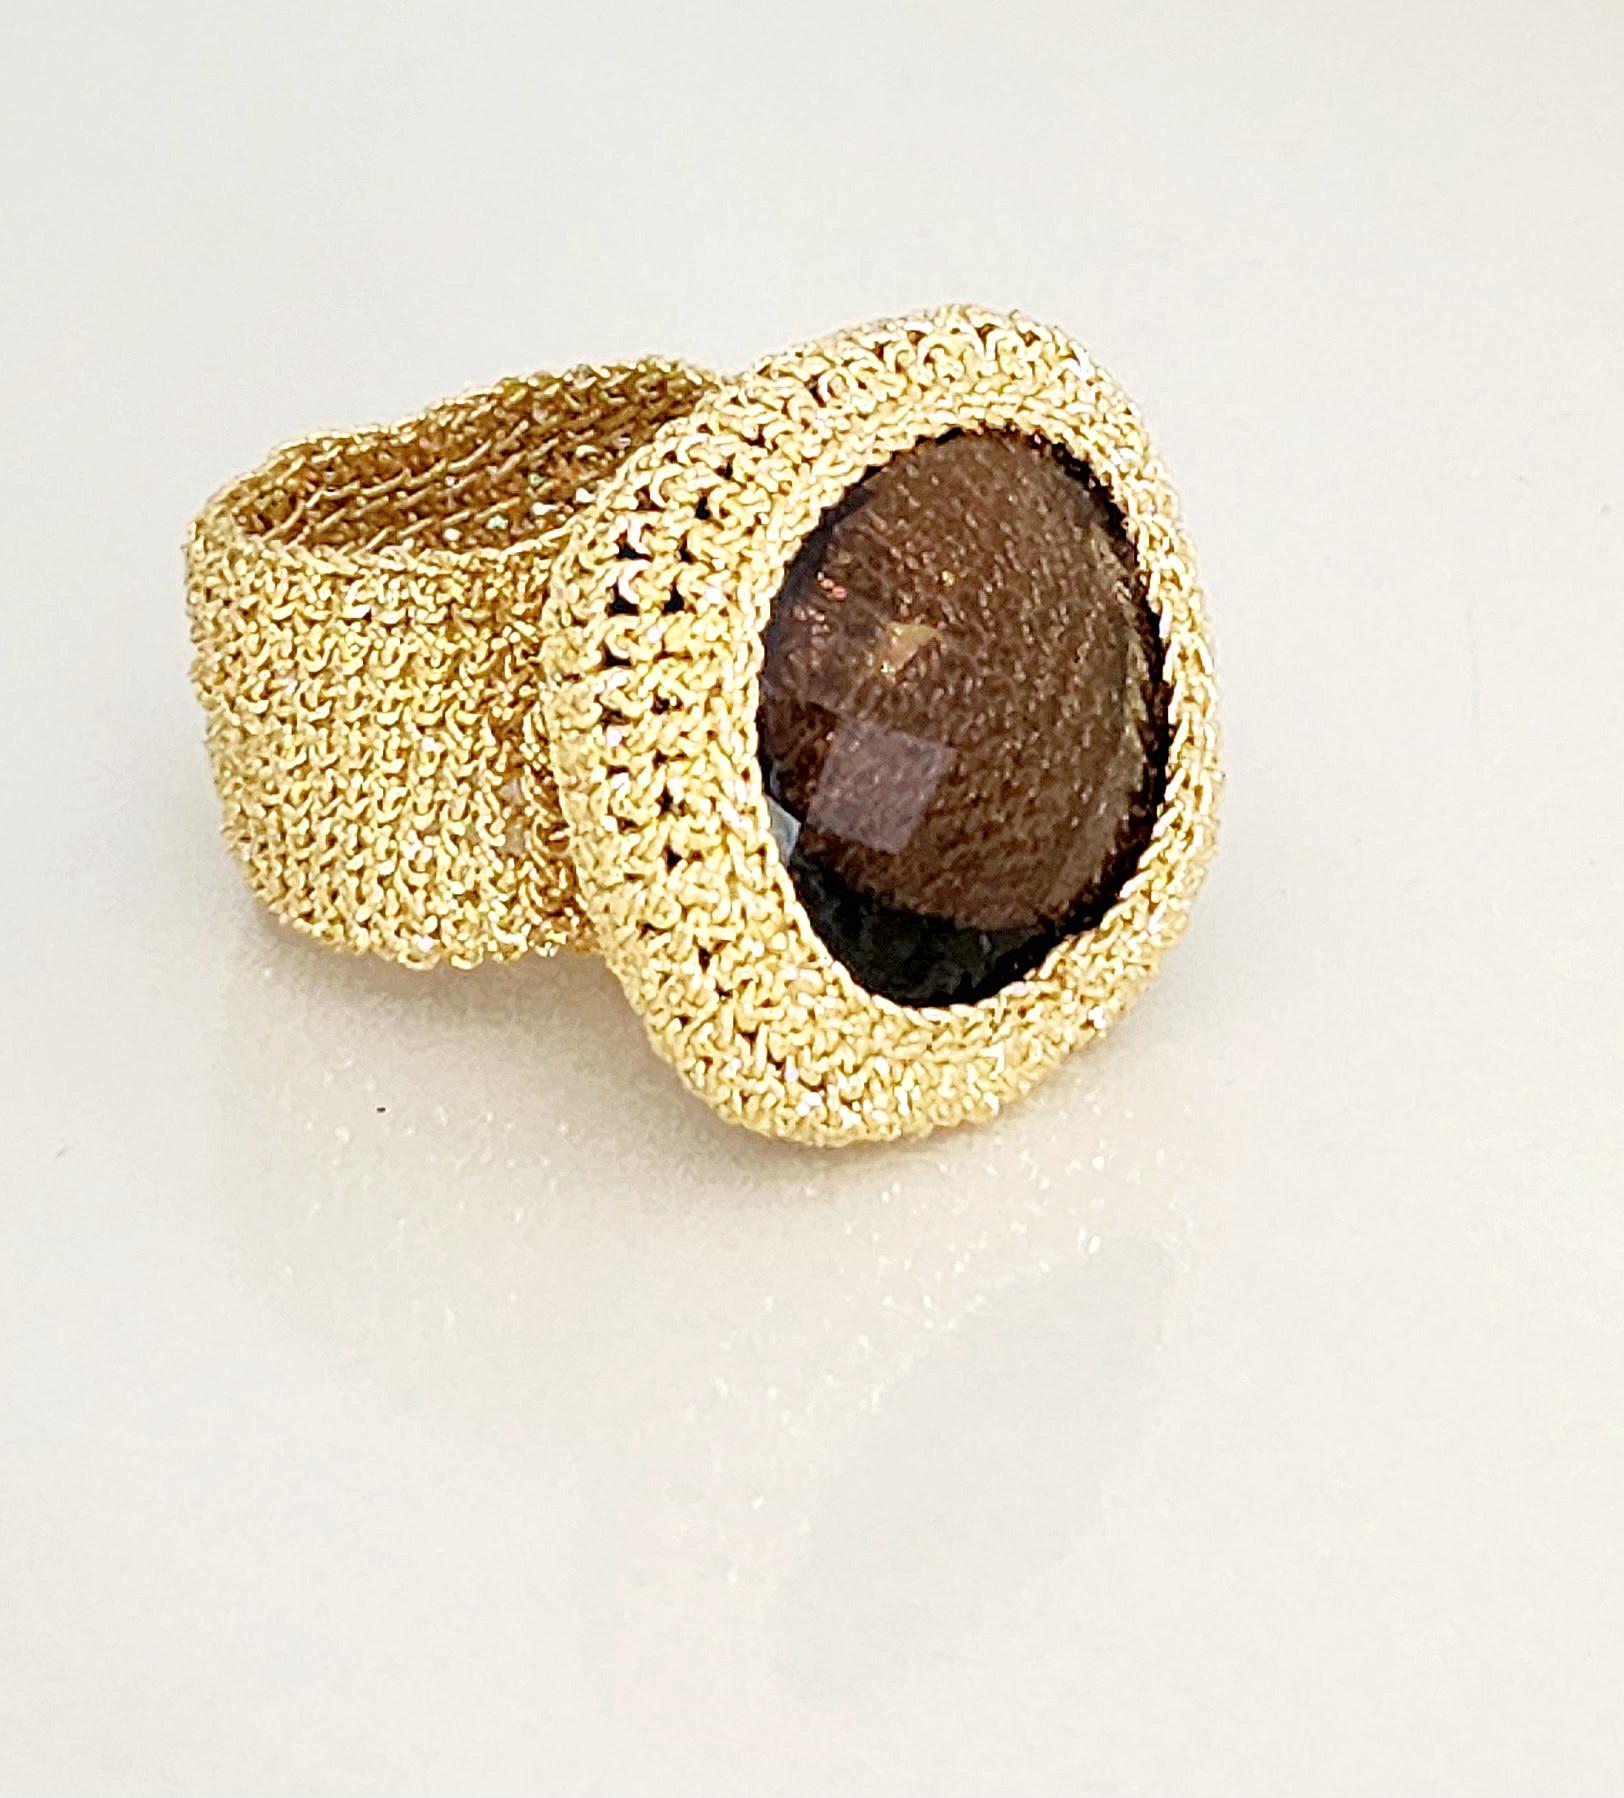 Einzigartiger handgehäkelter Ring. Dieser schöne Ring ist mit 18 Karat Goldfaden gehäkelt. Der Faden besteht aus einem 18-karätigen Golddraht, der abgeflacht und um einen Baumwollkern gewickelt ist. Der Stein ist ein schöner 25mmx25mm großer